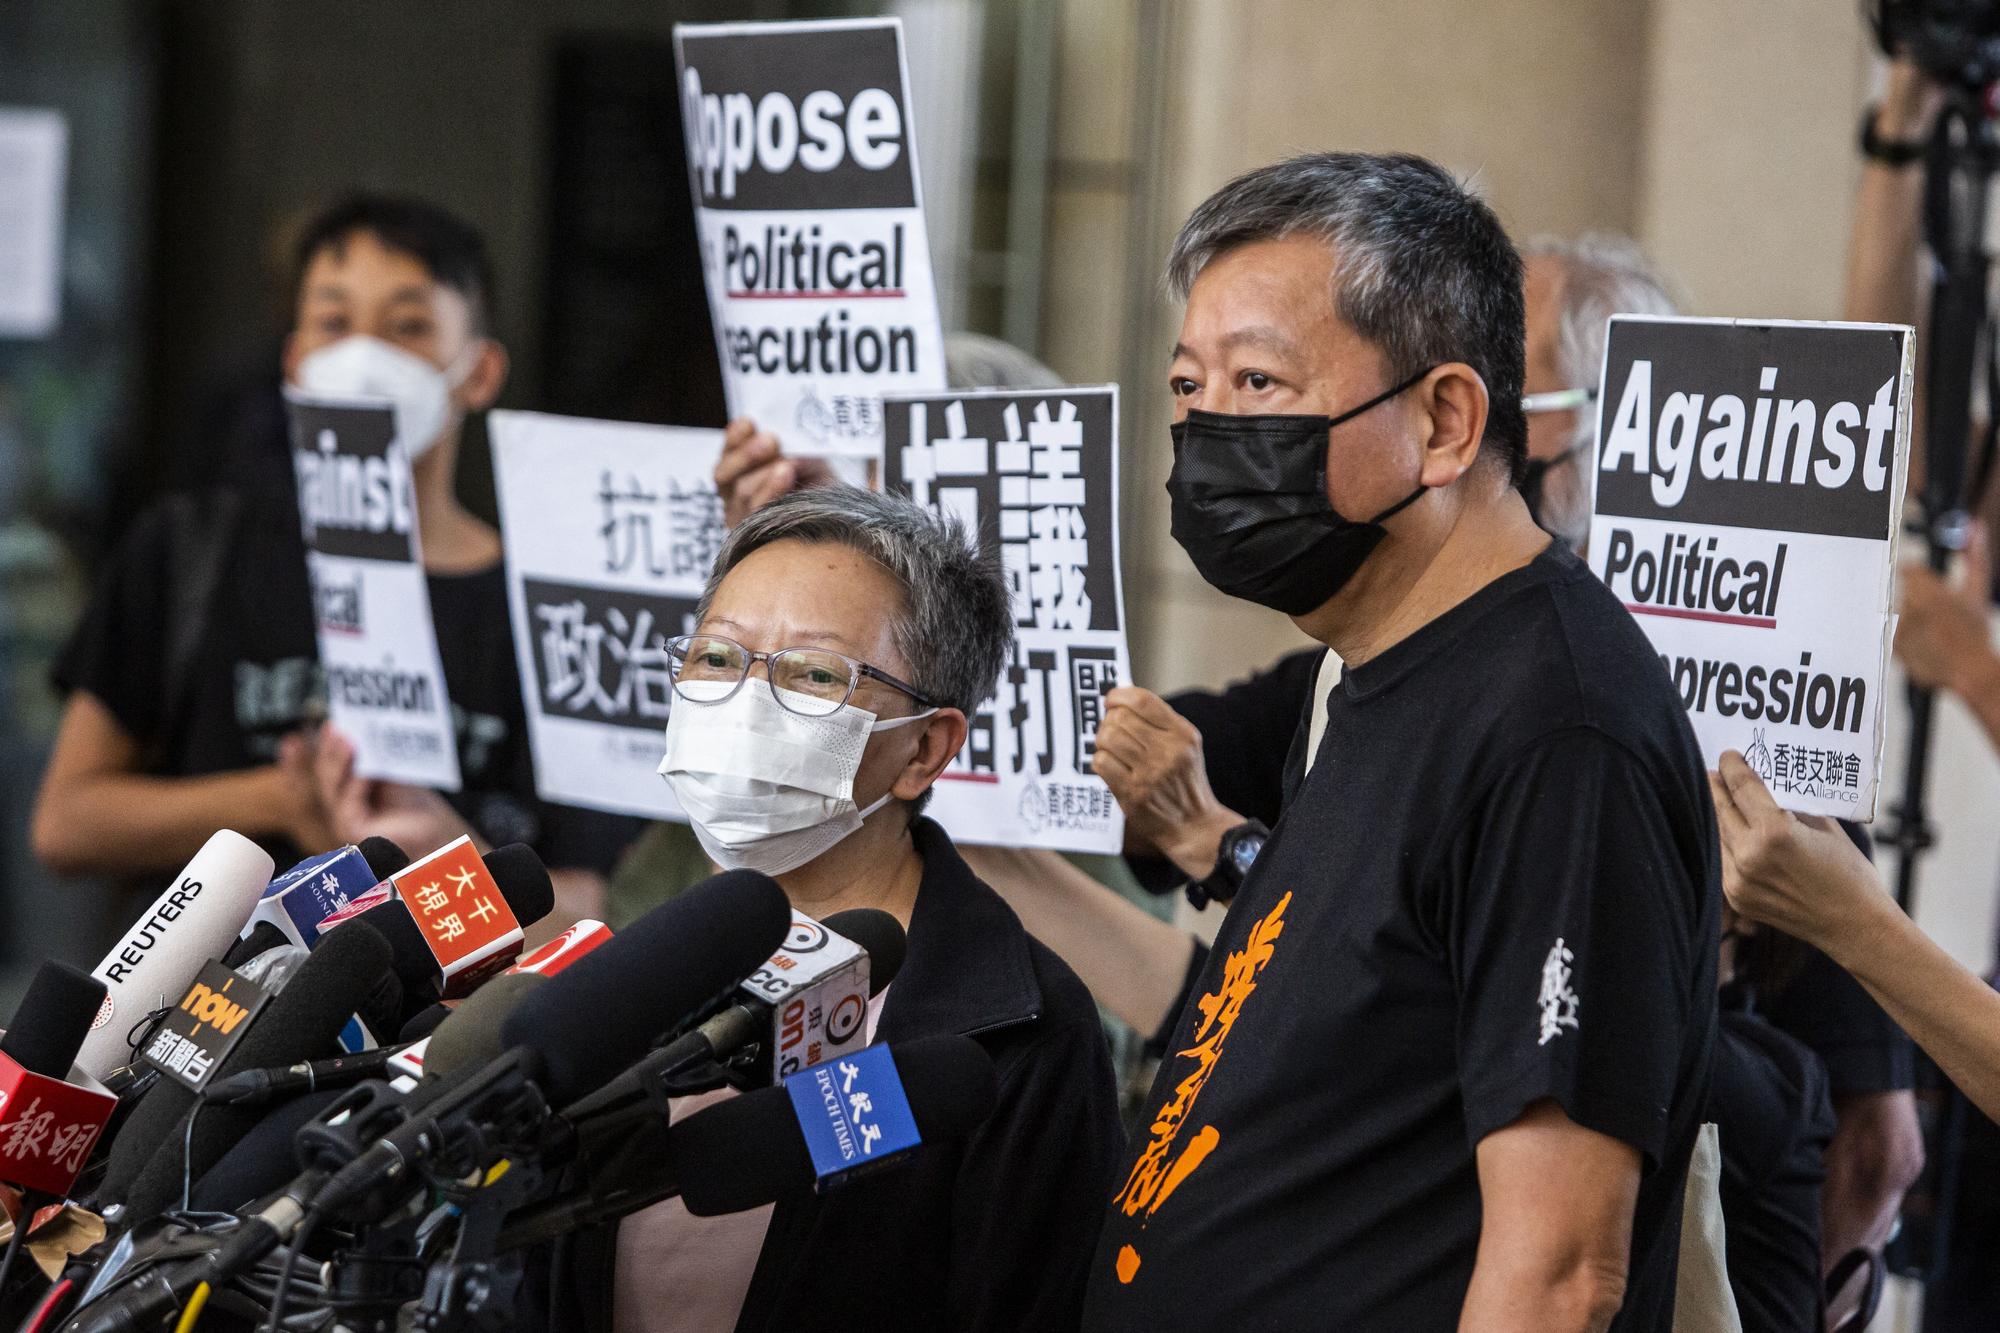 Des protestants dénoncent la répression politique à Hong Kong. [AFP - Isaac Lawrence]